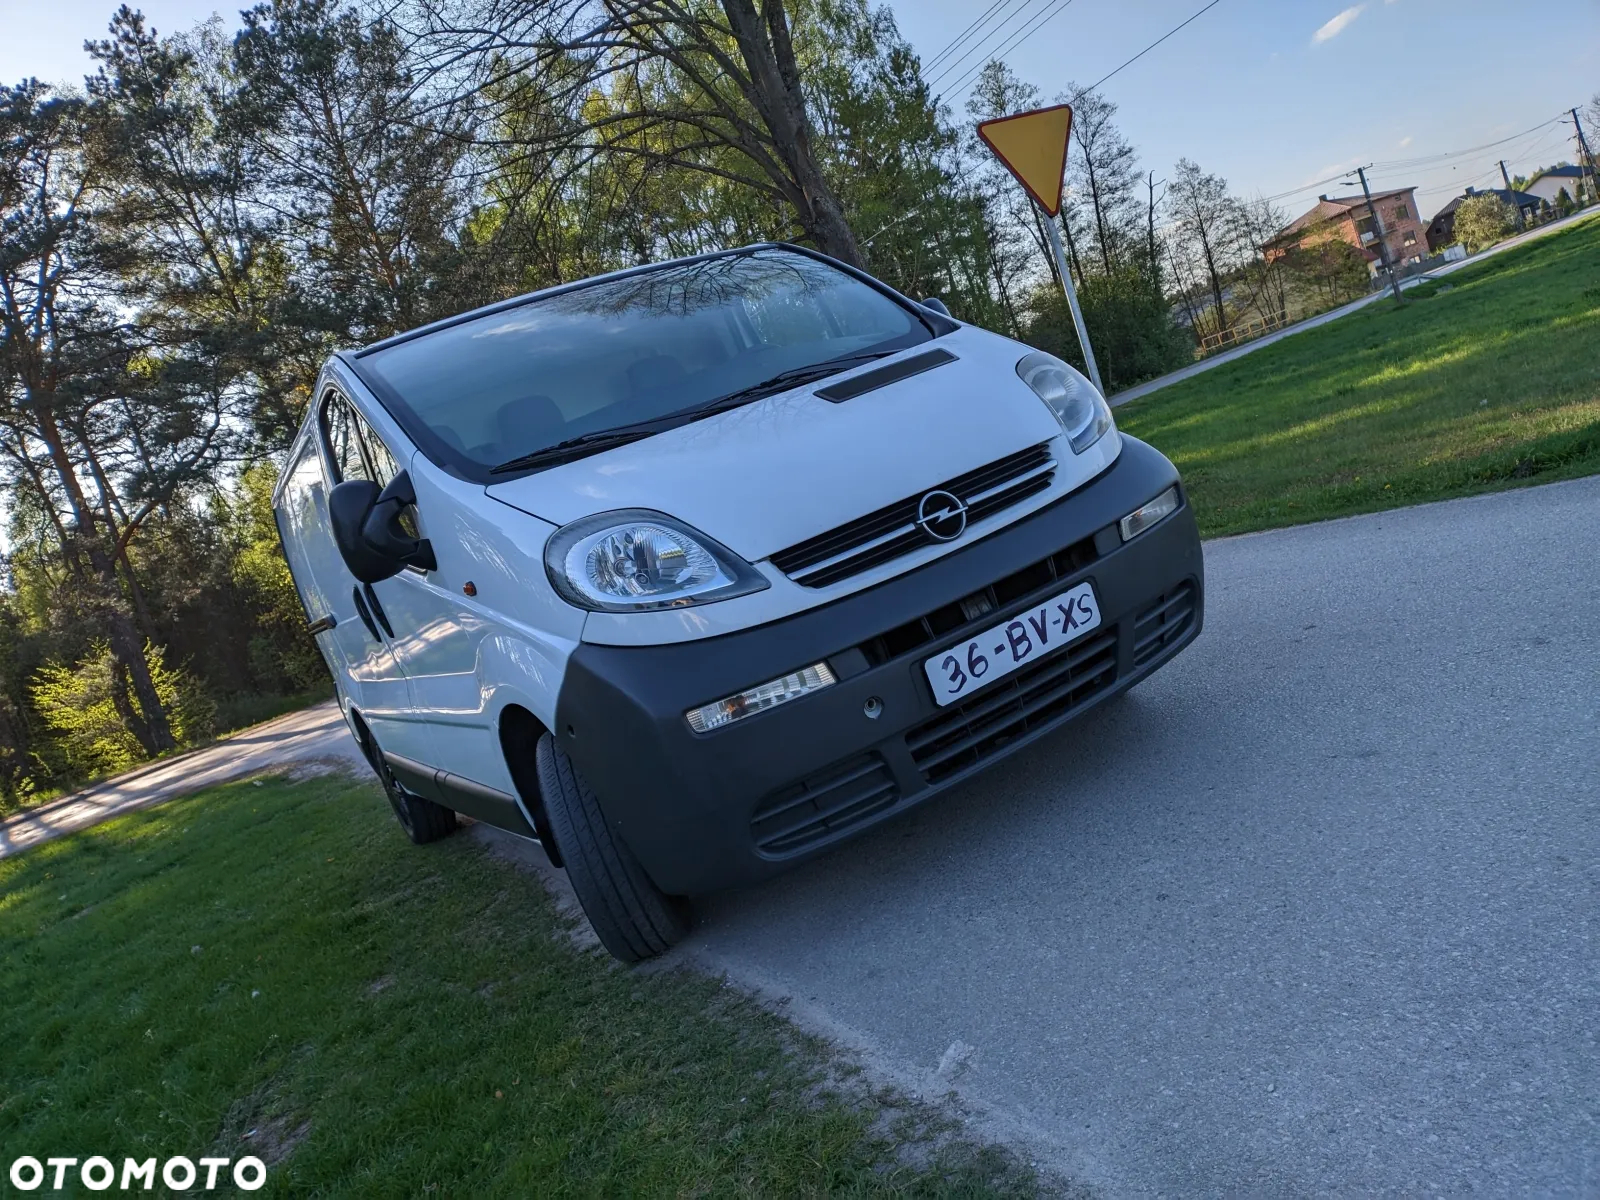 Opel VIVARO - 3